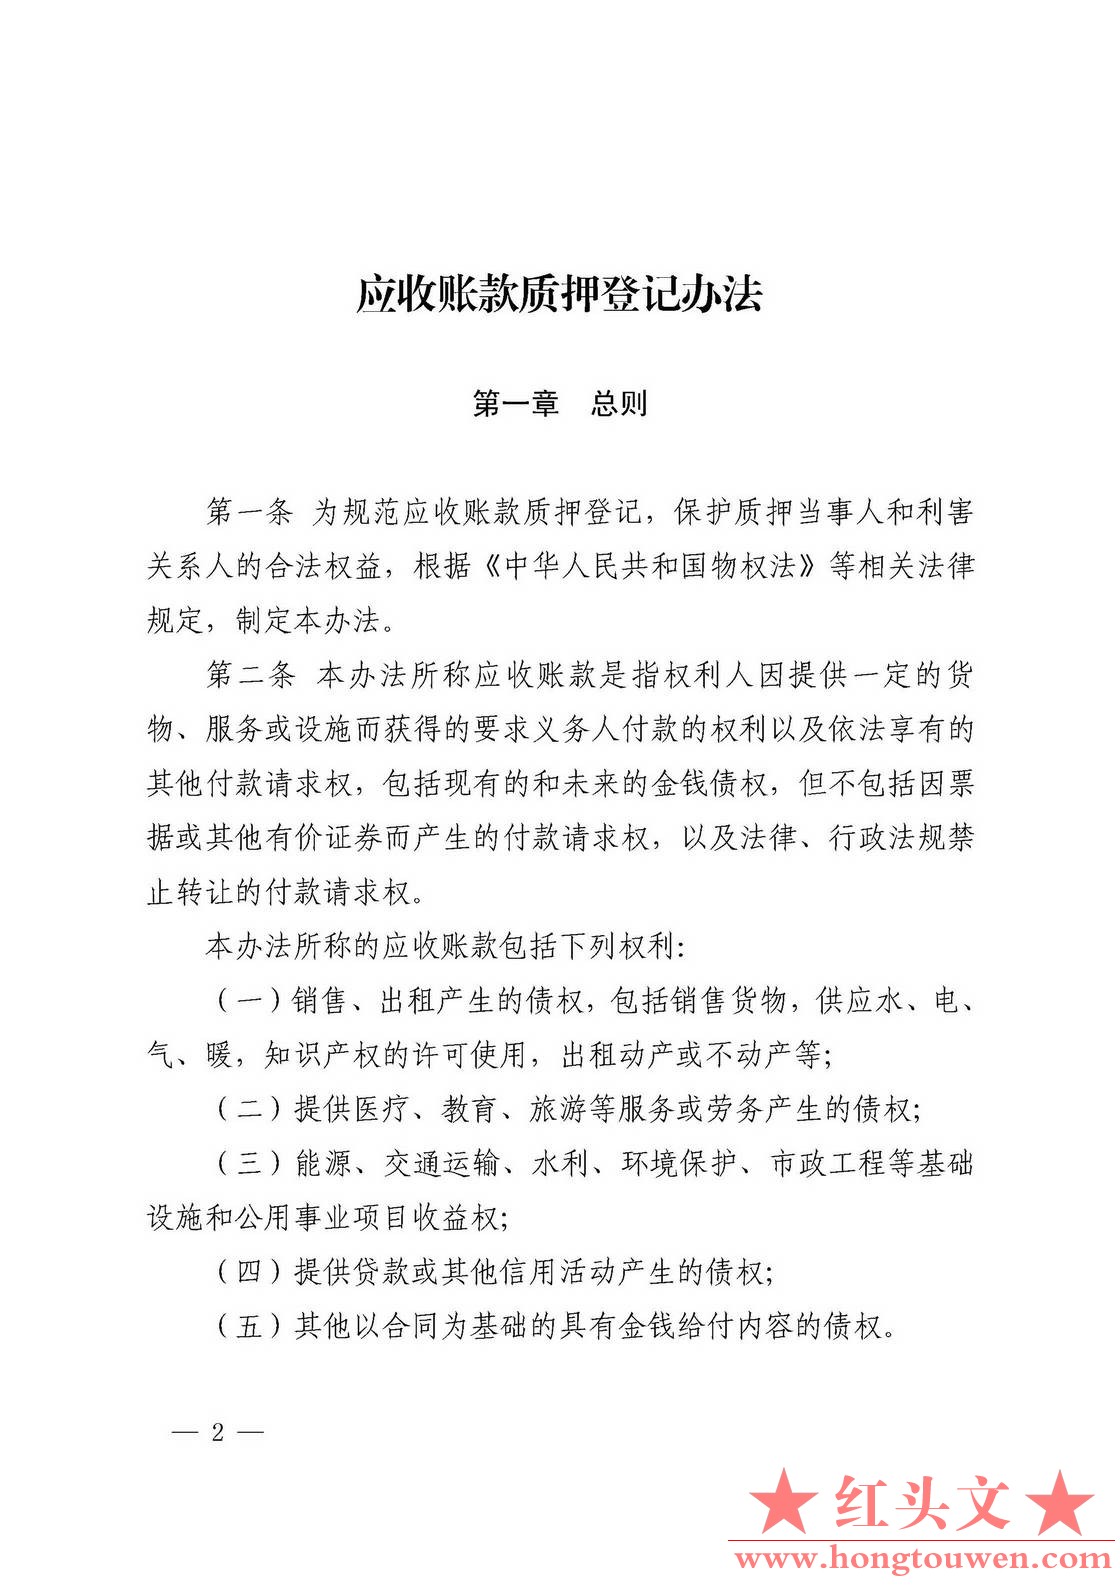 中国人民银行令[2019]第4号-应收账款质押登记办法_页面_2.jpg